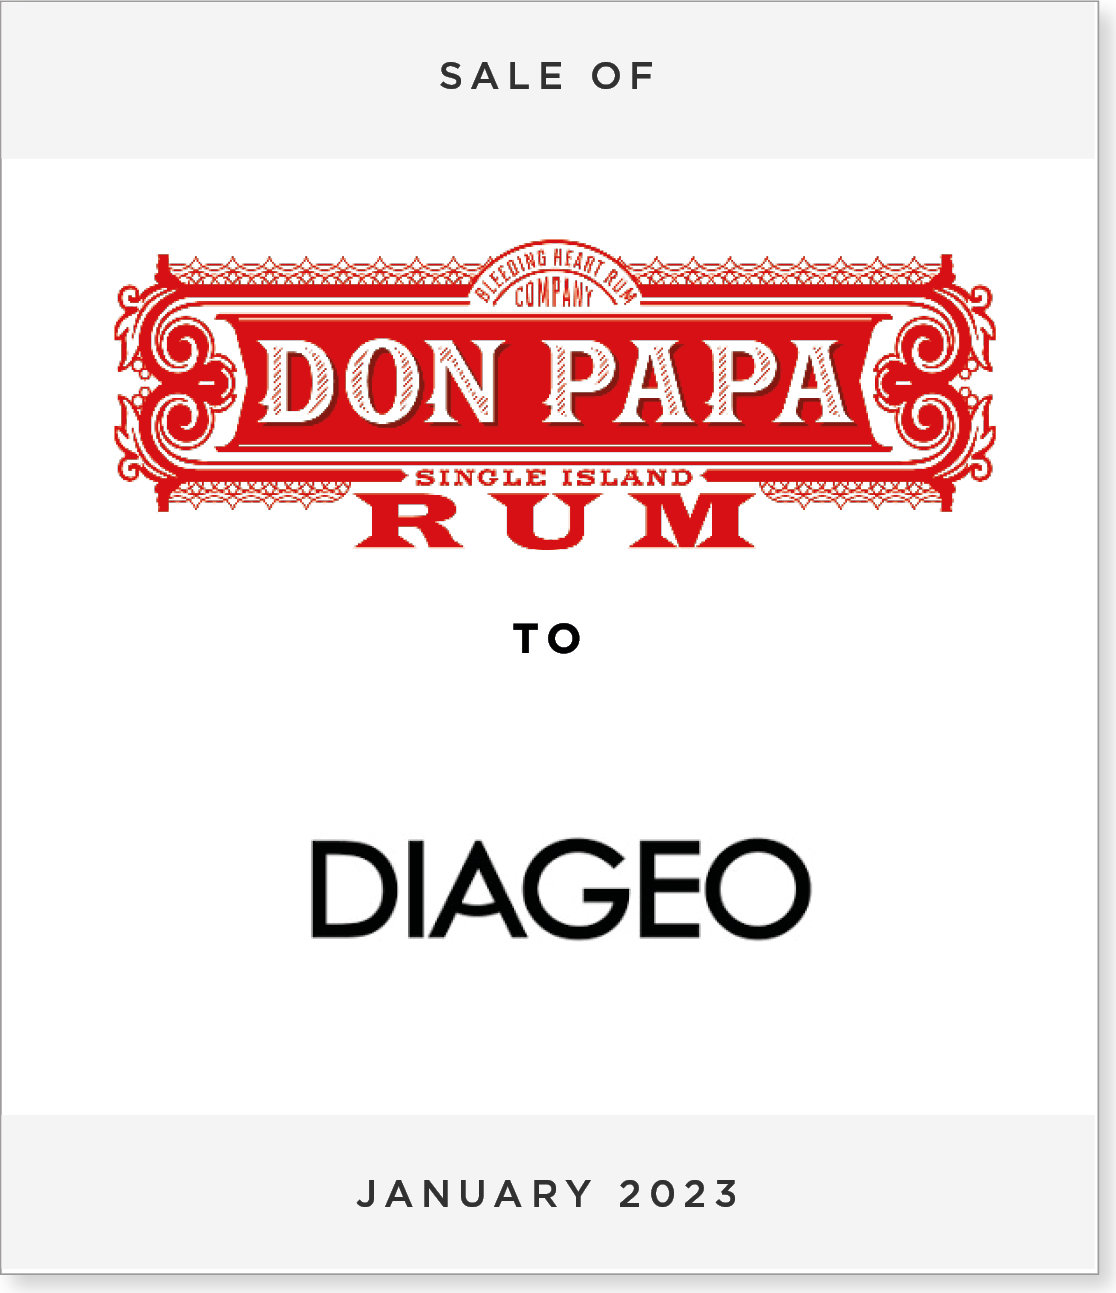 DonPapa_Diageo Sale of Don Papa Rum to Diageo